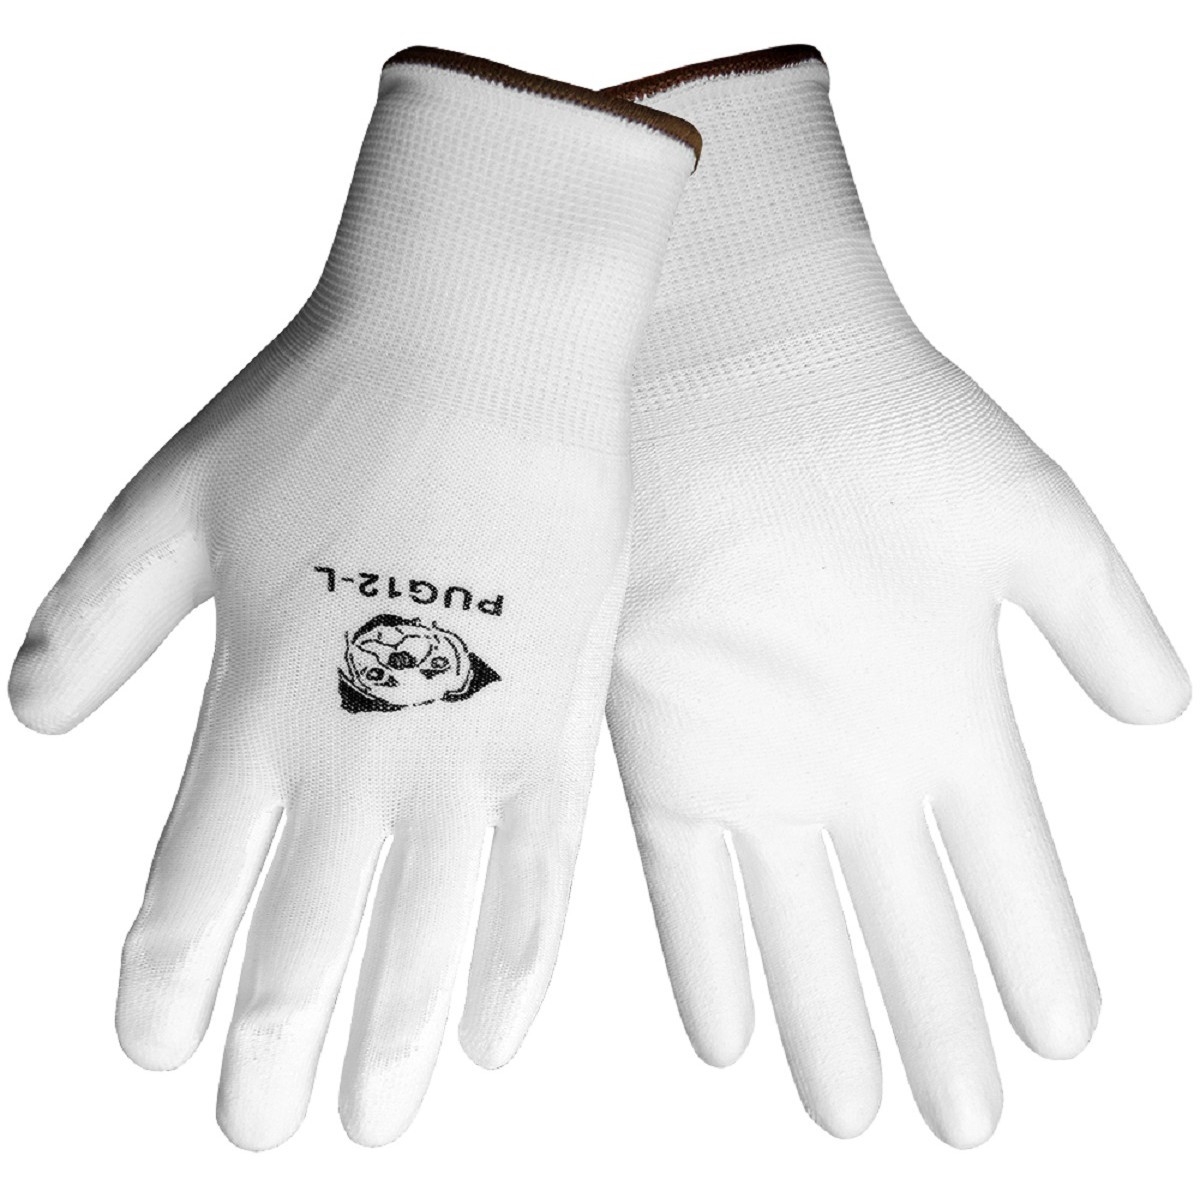 Global Glove PUG-12 White PU Coated Gloves